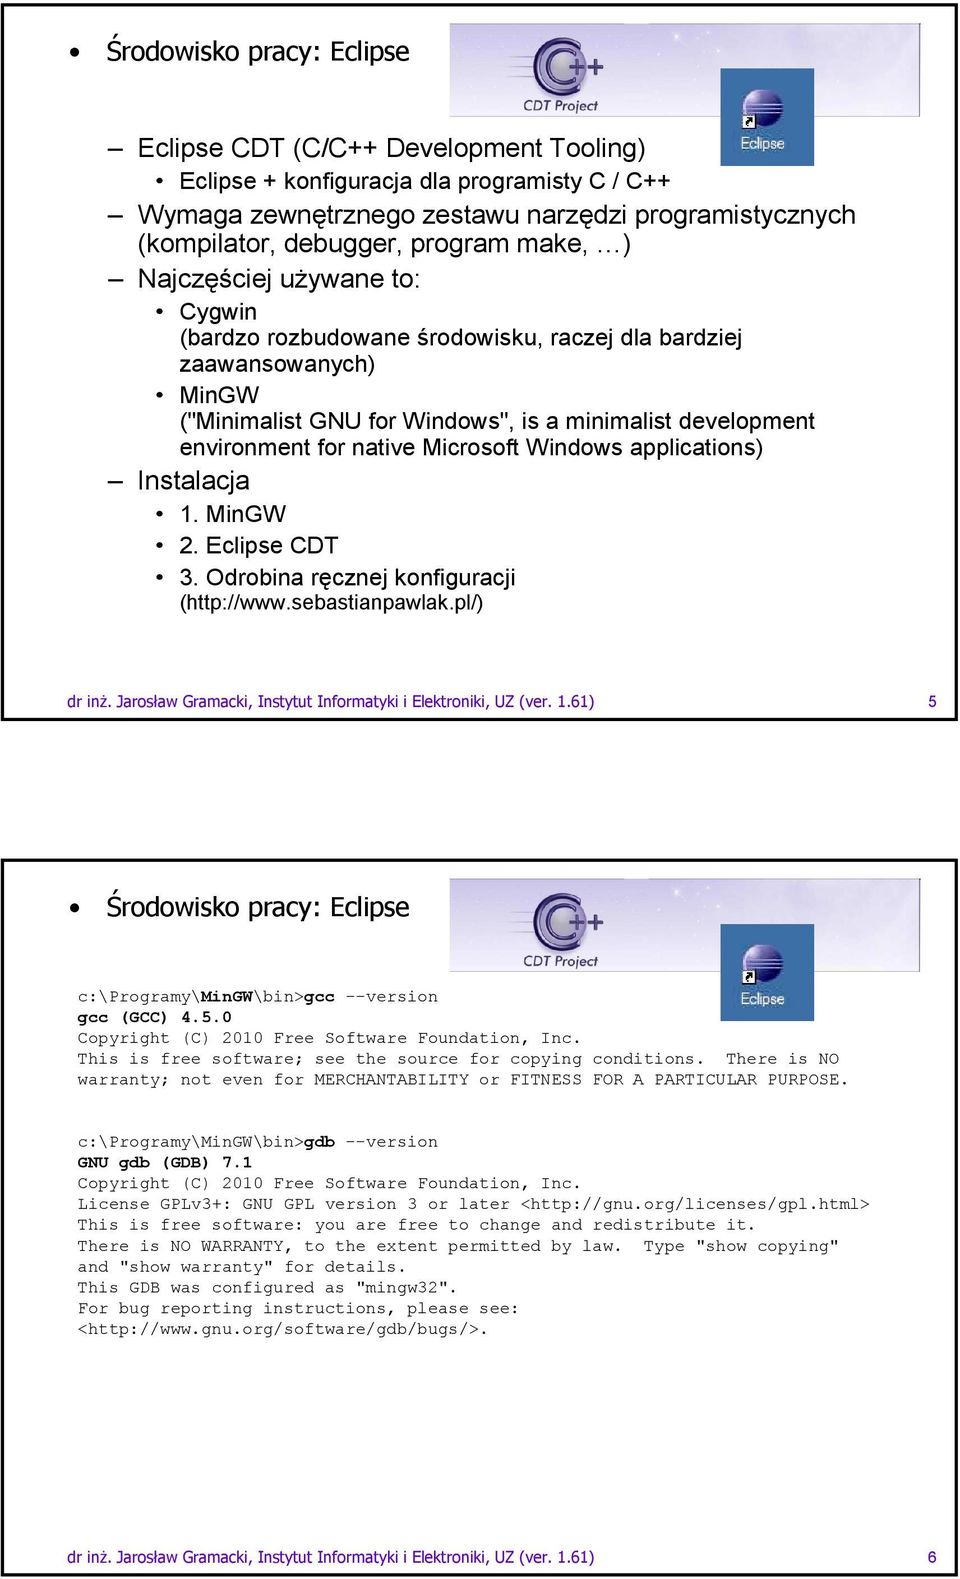 Microsoft Windows applications) Instalacja 1. MinGW 2. Eclipse CDT 3. Odrobina ręcznej konfiguracji (http://www.sebastianpawlak.pl/) dr inŝ.